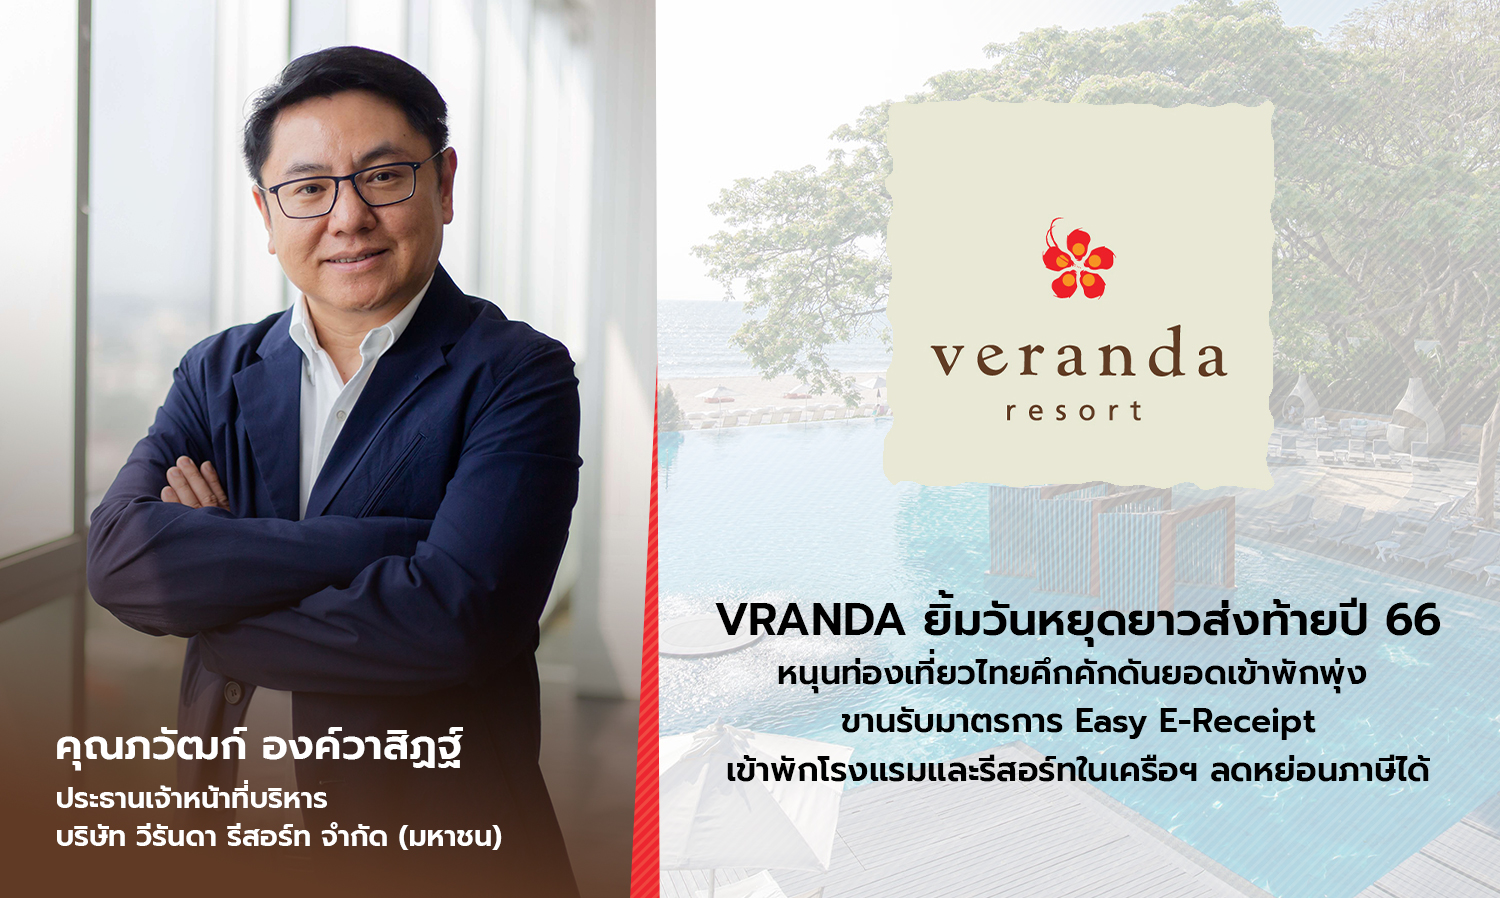 VRANDA ยิ้มวันหยุดยาวส่งท้ายปี 66 หนุนท่องเที่ยวไทยคึกคักดันยอดเข้าพักพุ่ง ขานรับมาตรการ Easy E-Receipt เข้าพักโรงแรมและรีสอร์ทในเครือฯ ลดหย่อนภาษีได้